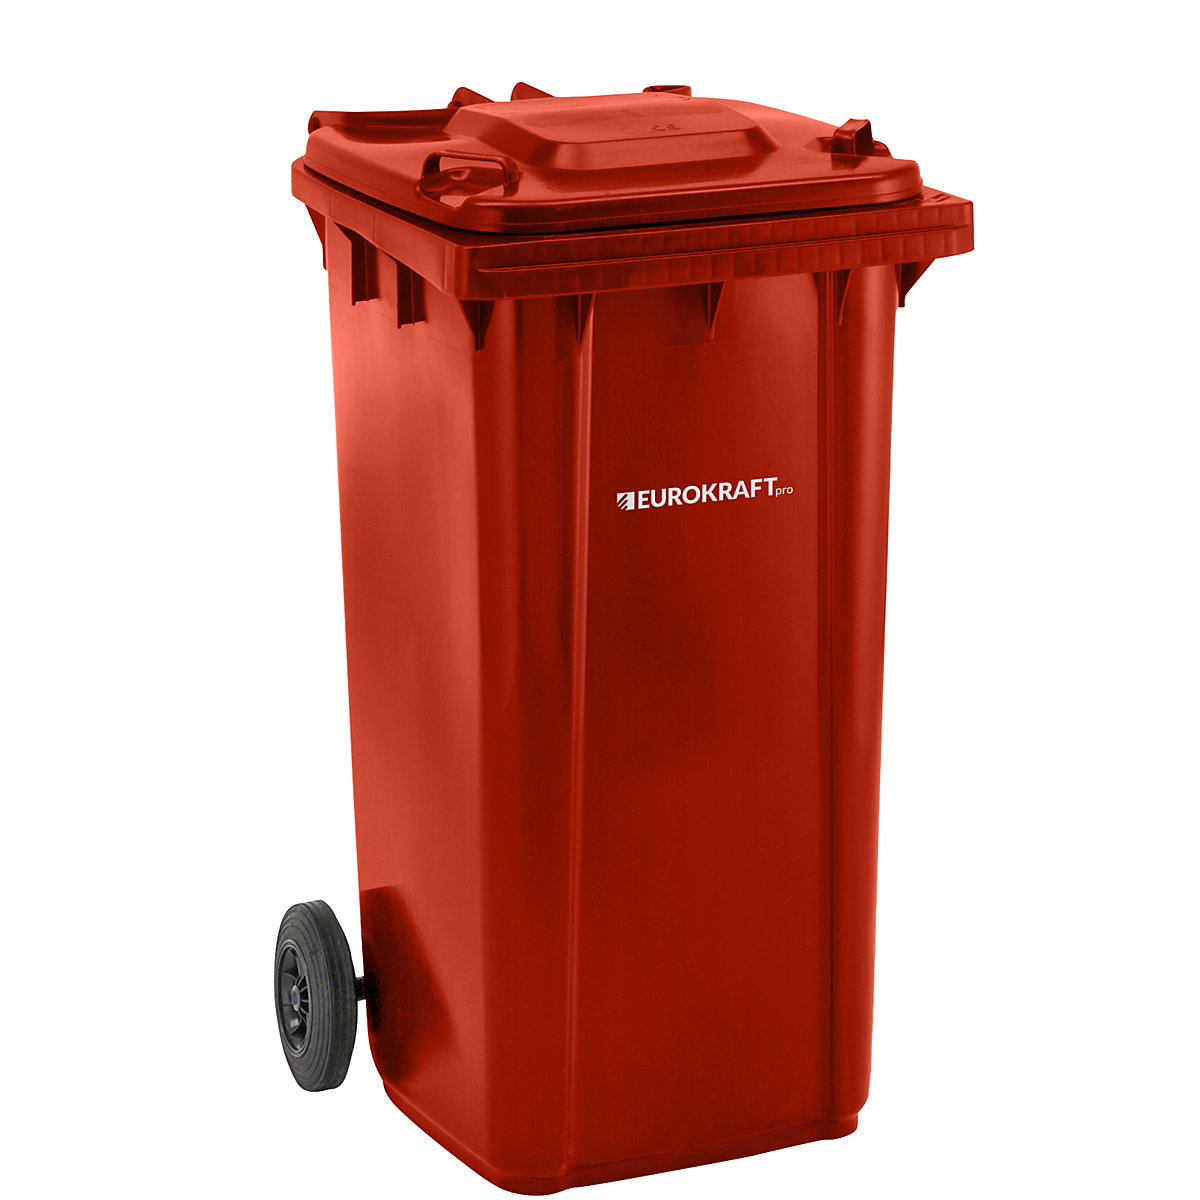 EUROKRAFTpro – Plastic waste bin, DIN EN 840, capacity 240 l, WxHxD 580 x 1100 x 740 mm, red